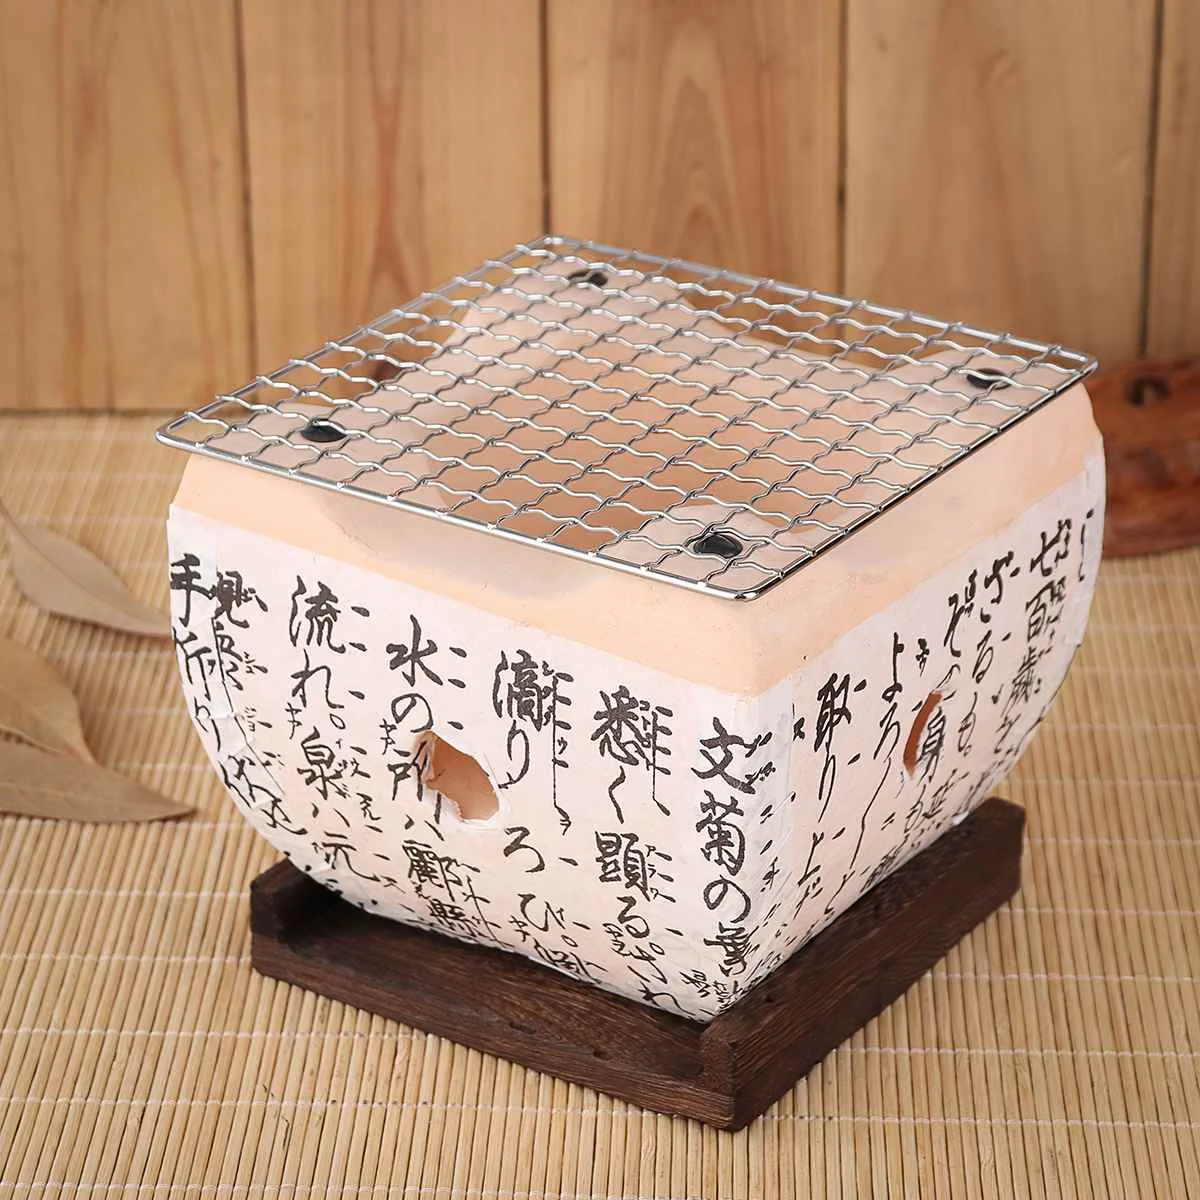 2 размера японский стильный гриль для барбекю угольная плита Konro керамика Hibachi Yakitori Кемпинг барбекю принадлежности для барбекю инструменты для дома отеля - Цвет: 15x15x12 cm